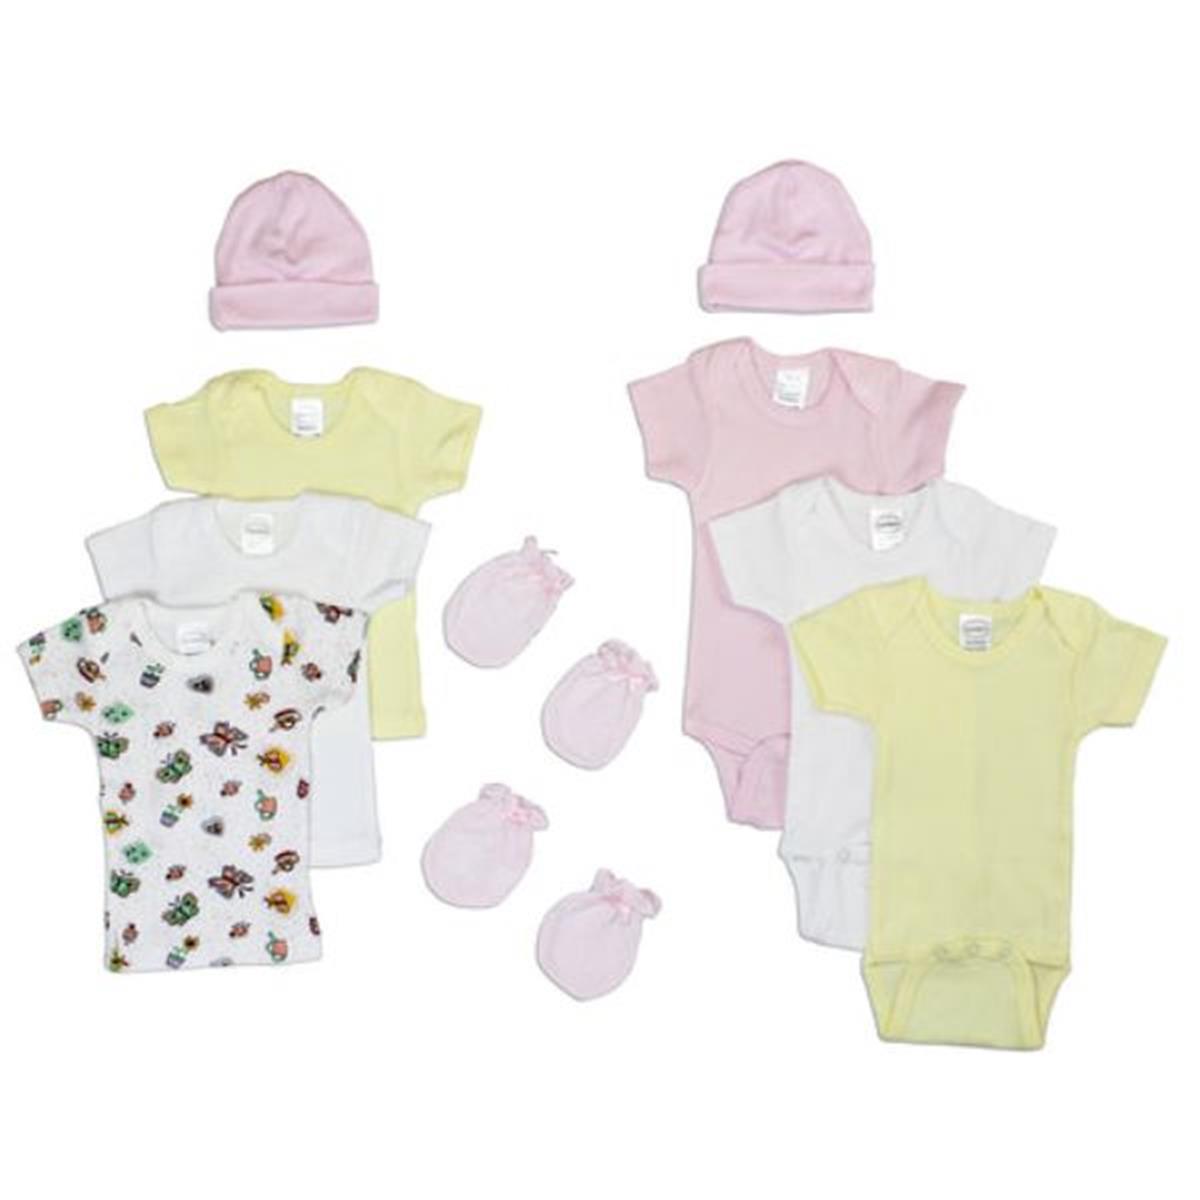 Bambini LS-0049 Newborn Baby Girls Layette Baby Shower Gift Set&#44; White & Pink - Newborn